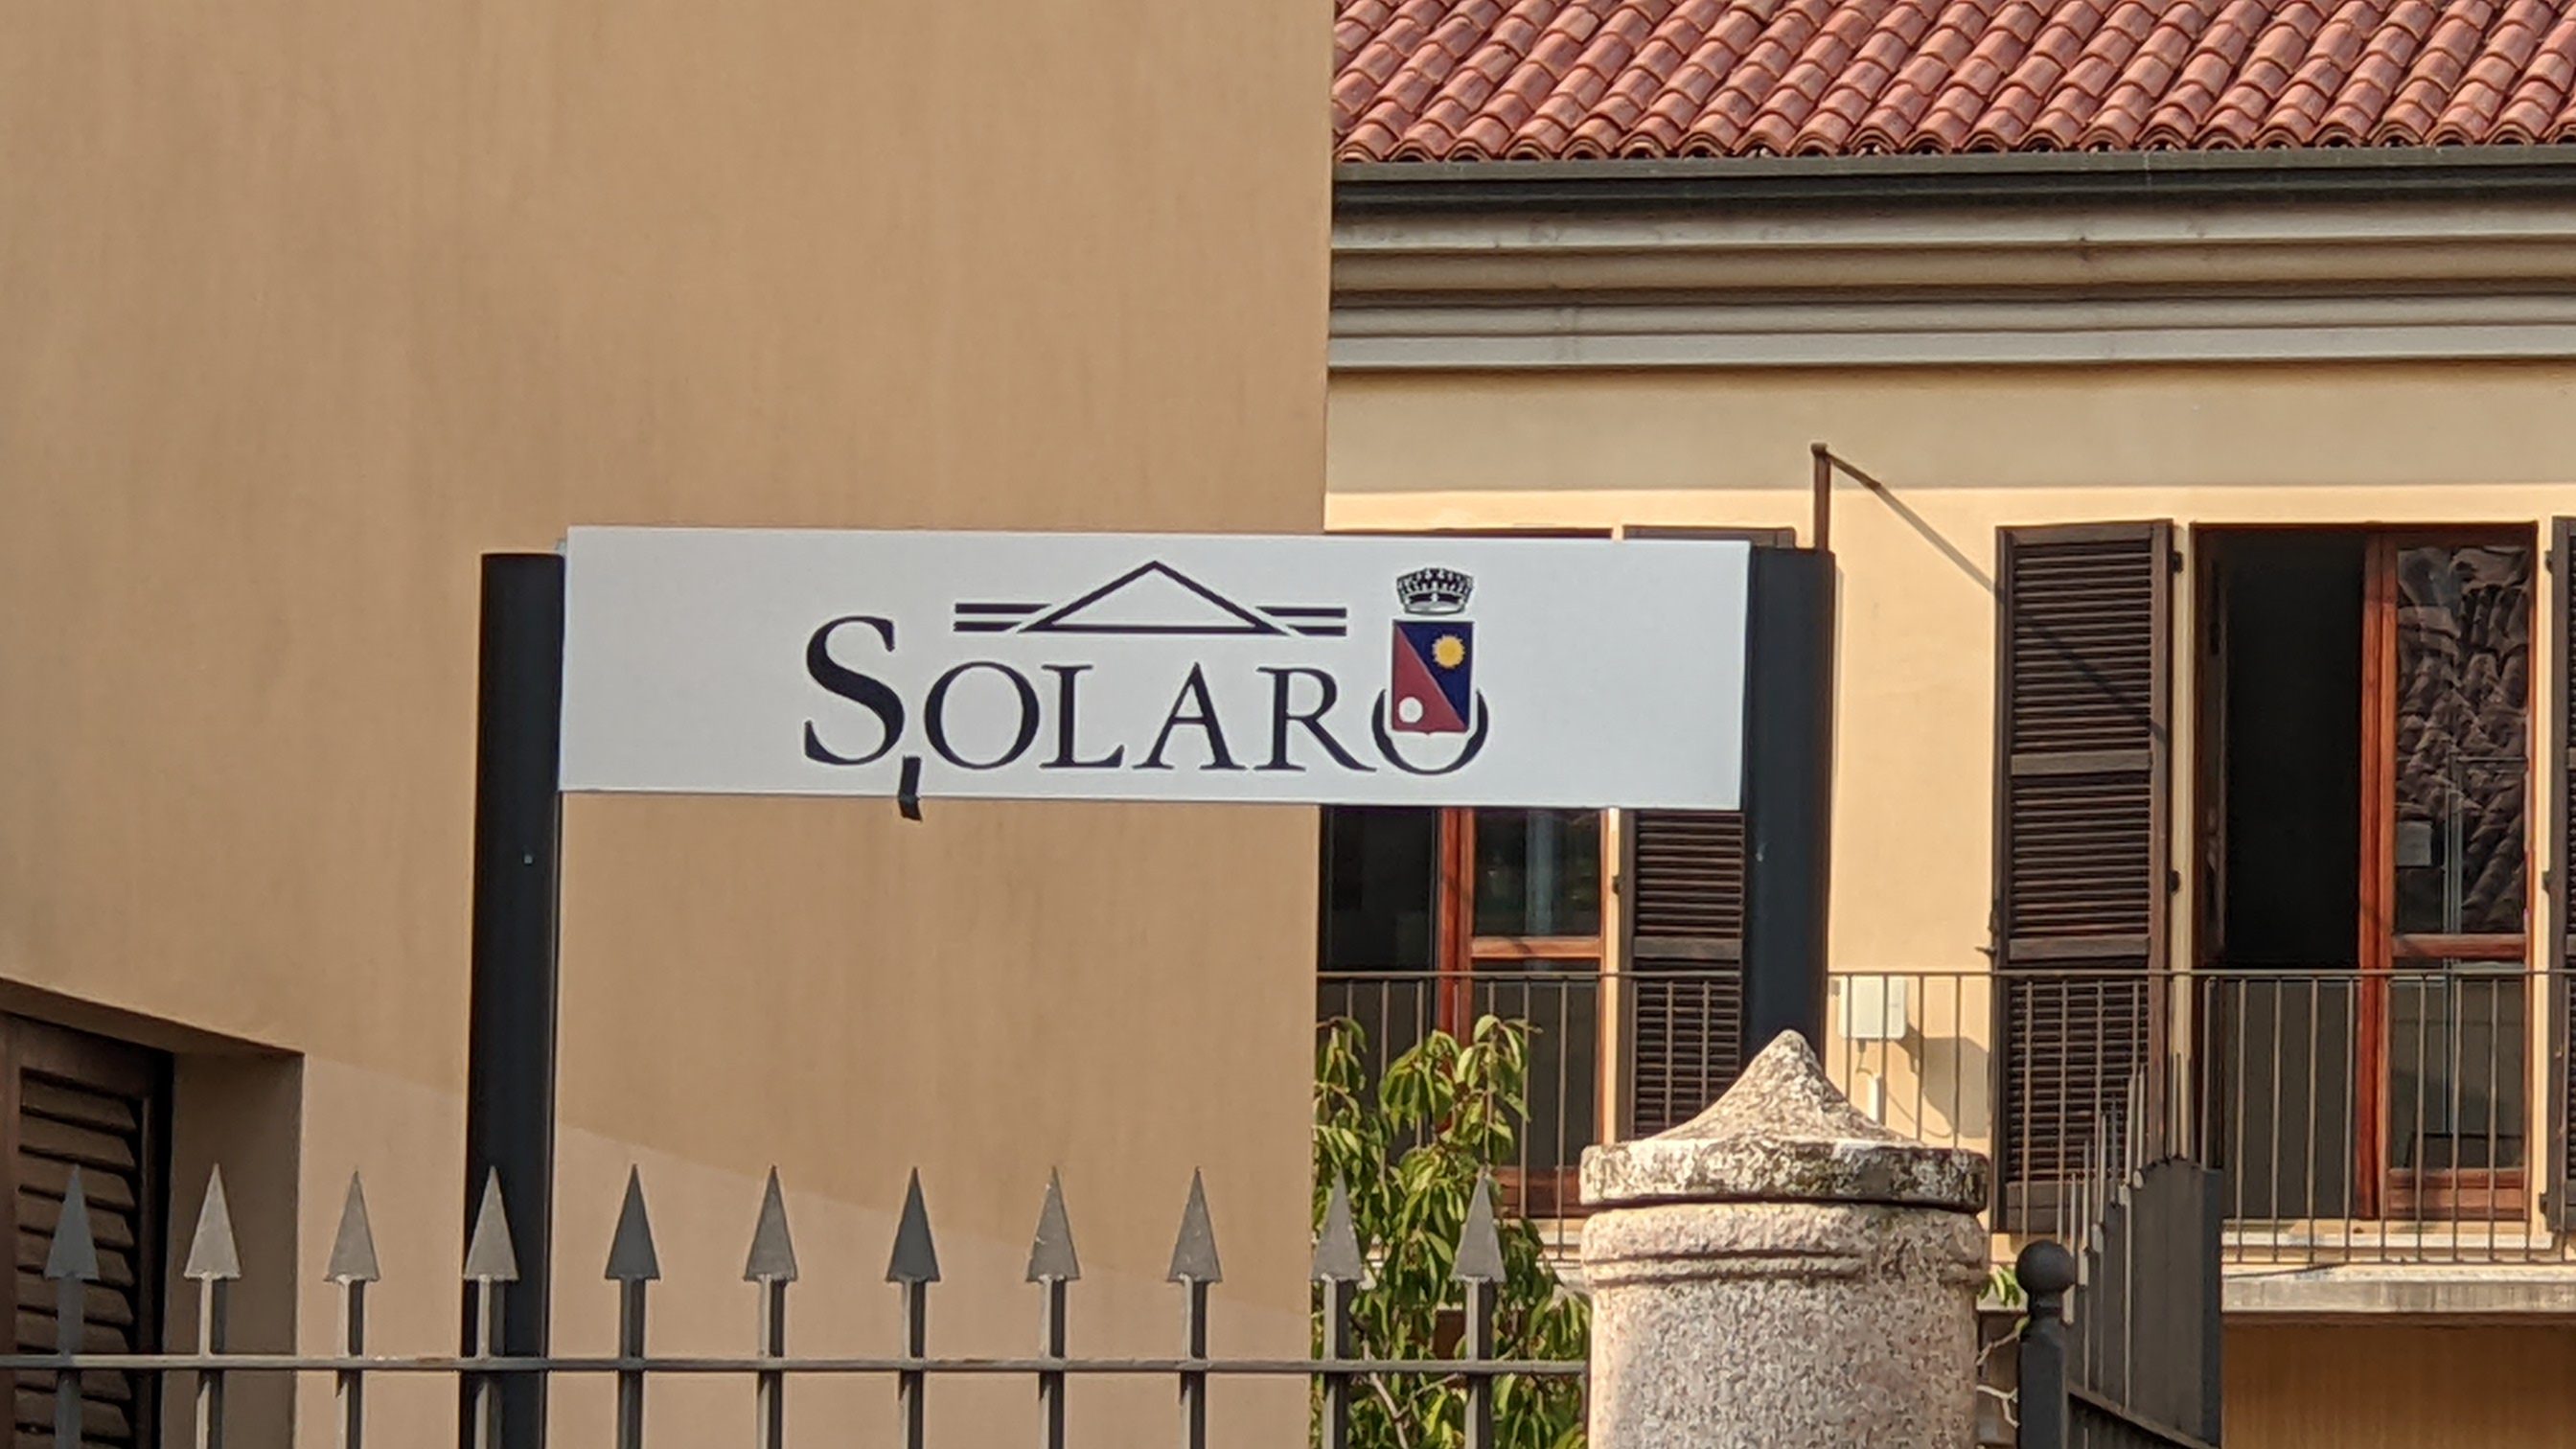 Solaro approva il Pgt, Castelnovo: “Importante cambiamento per Solaro”